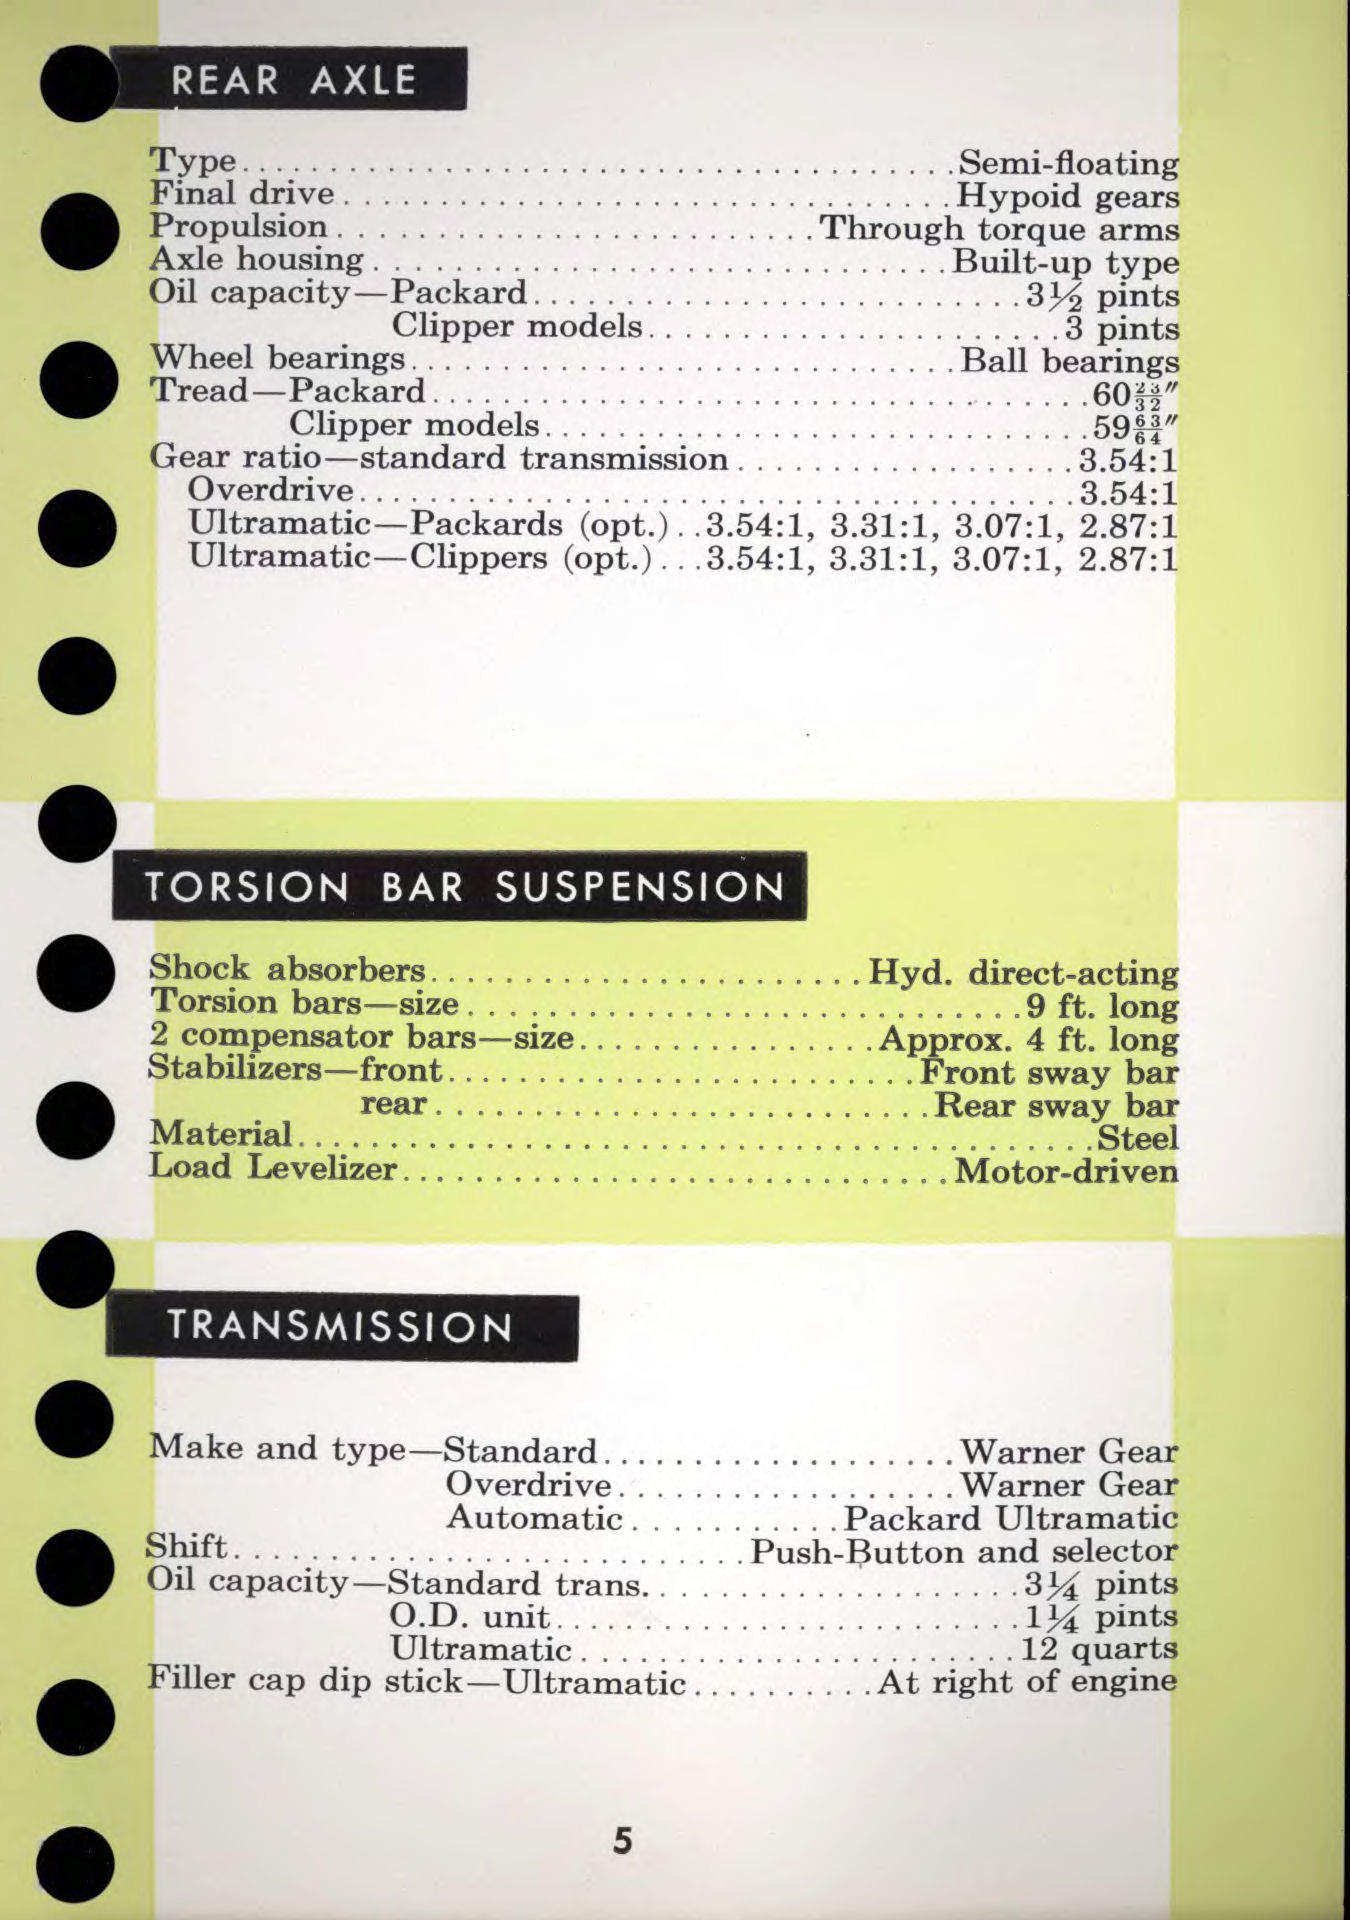 1956 Packard Data Book-k05